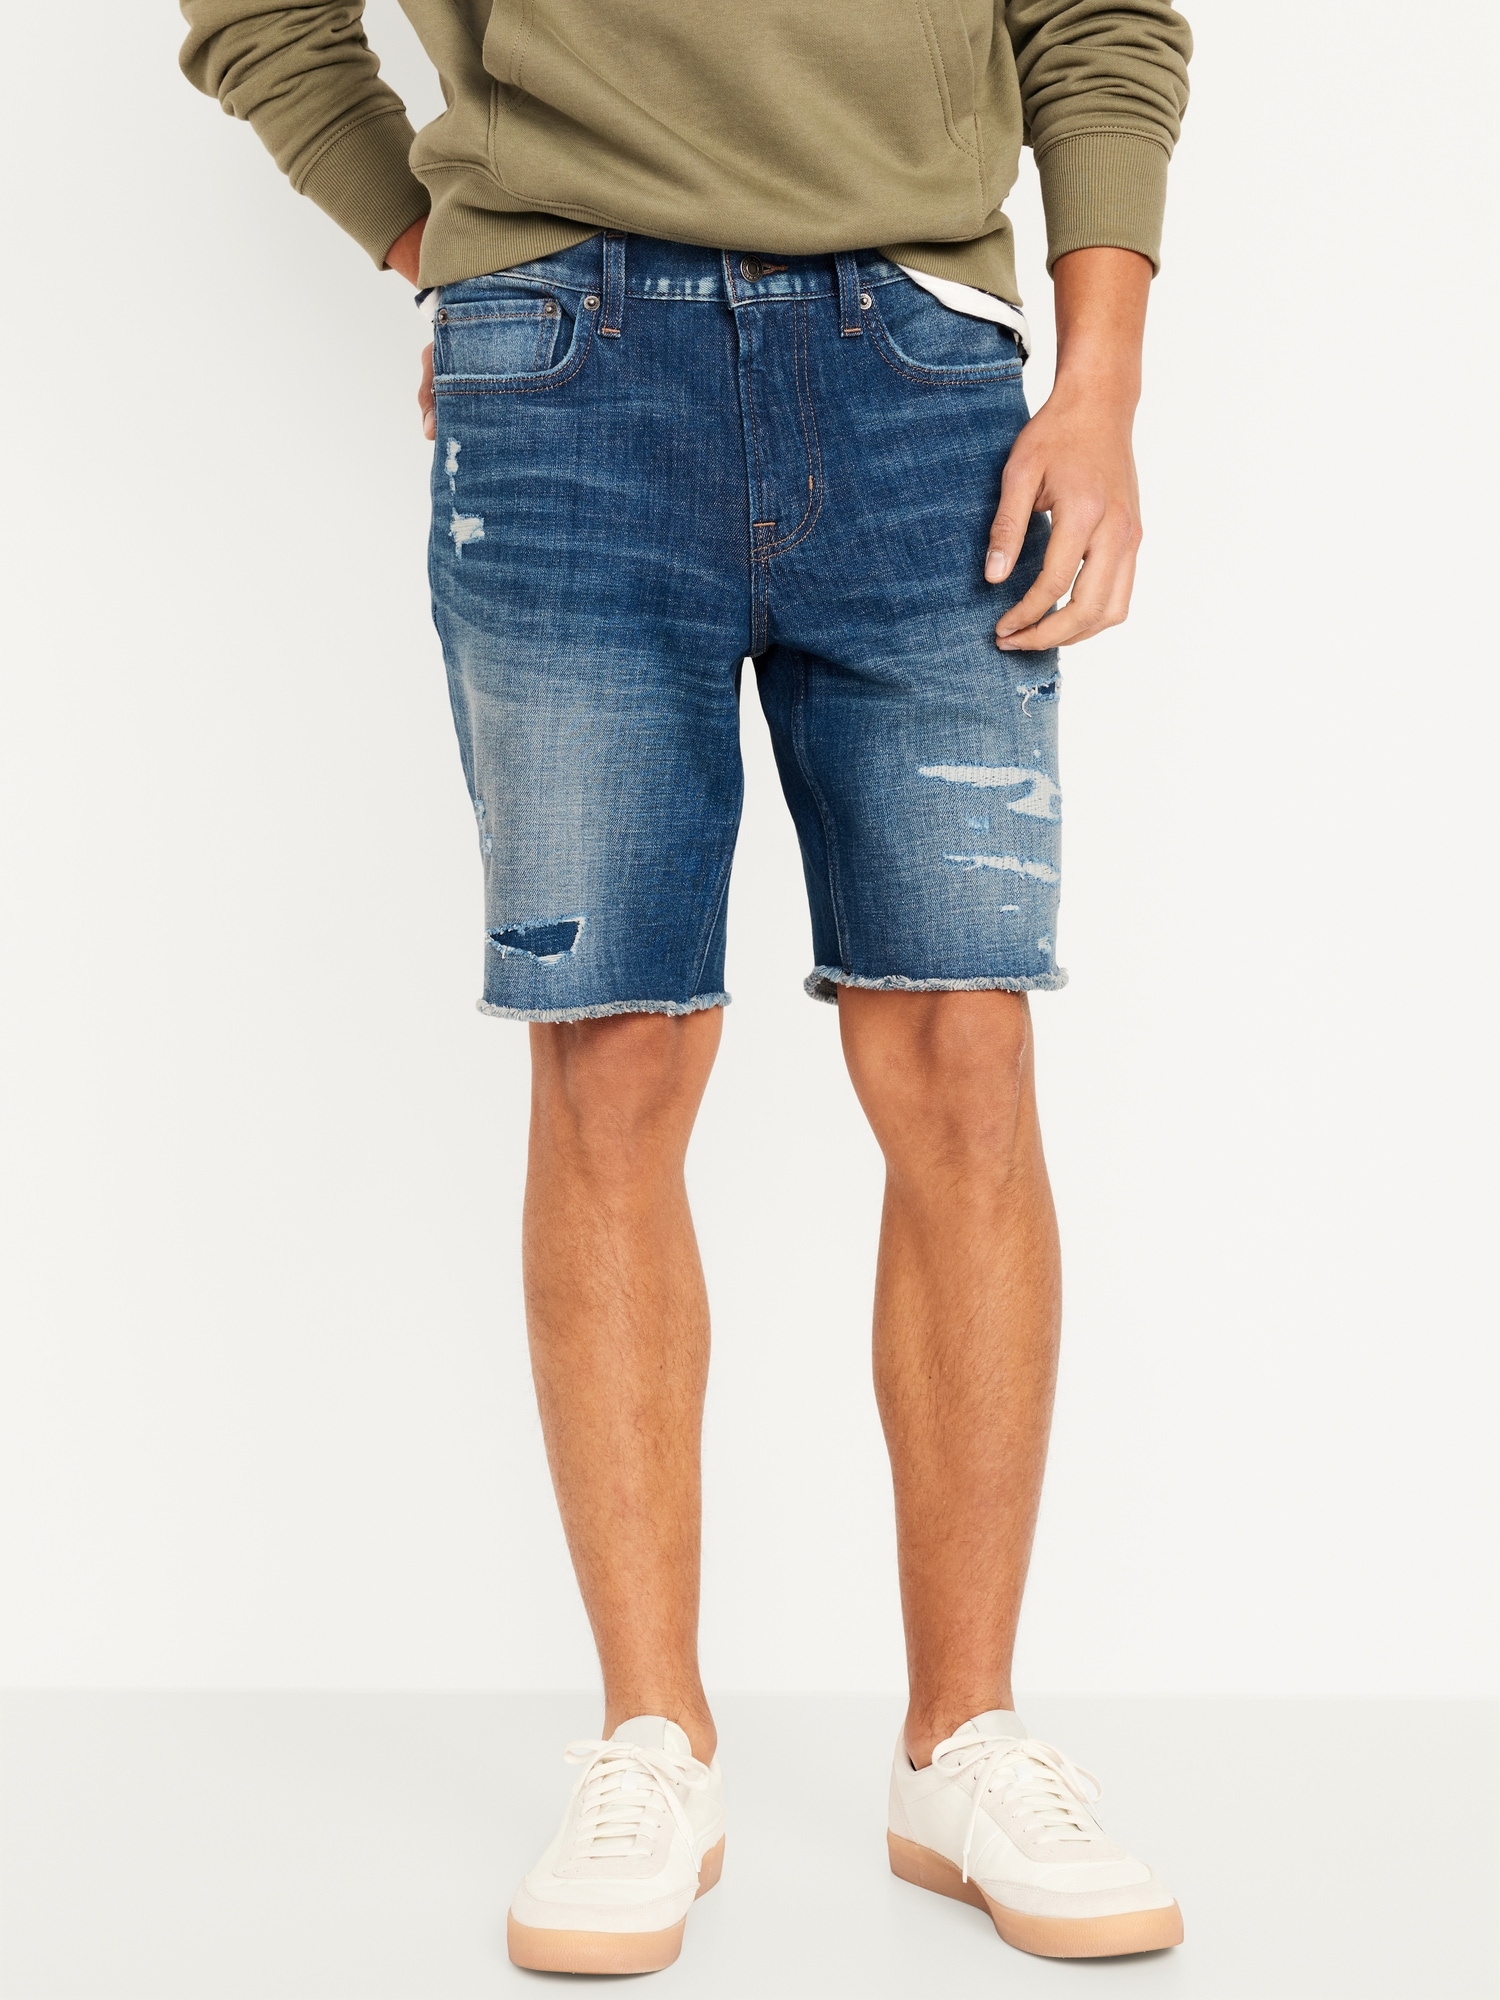 Slim Cut-Off Jean Shorts -- 9.5-inch inseam